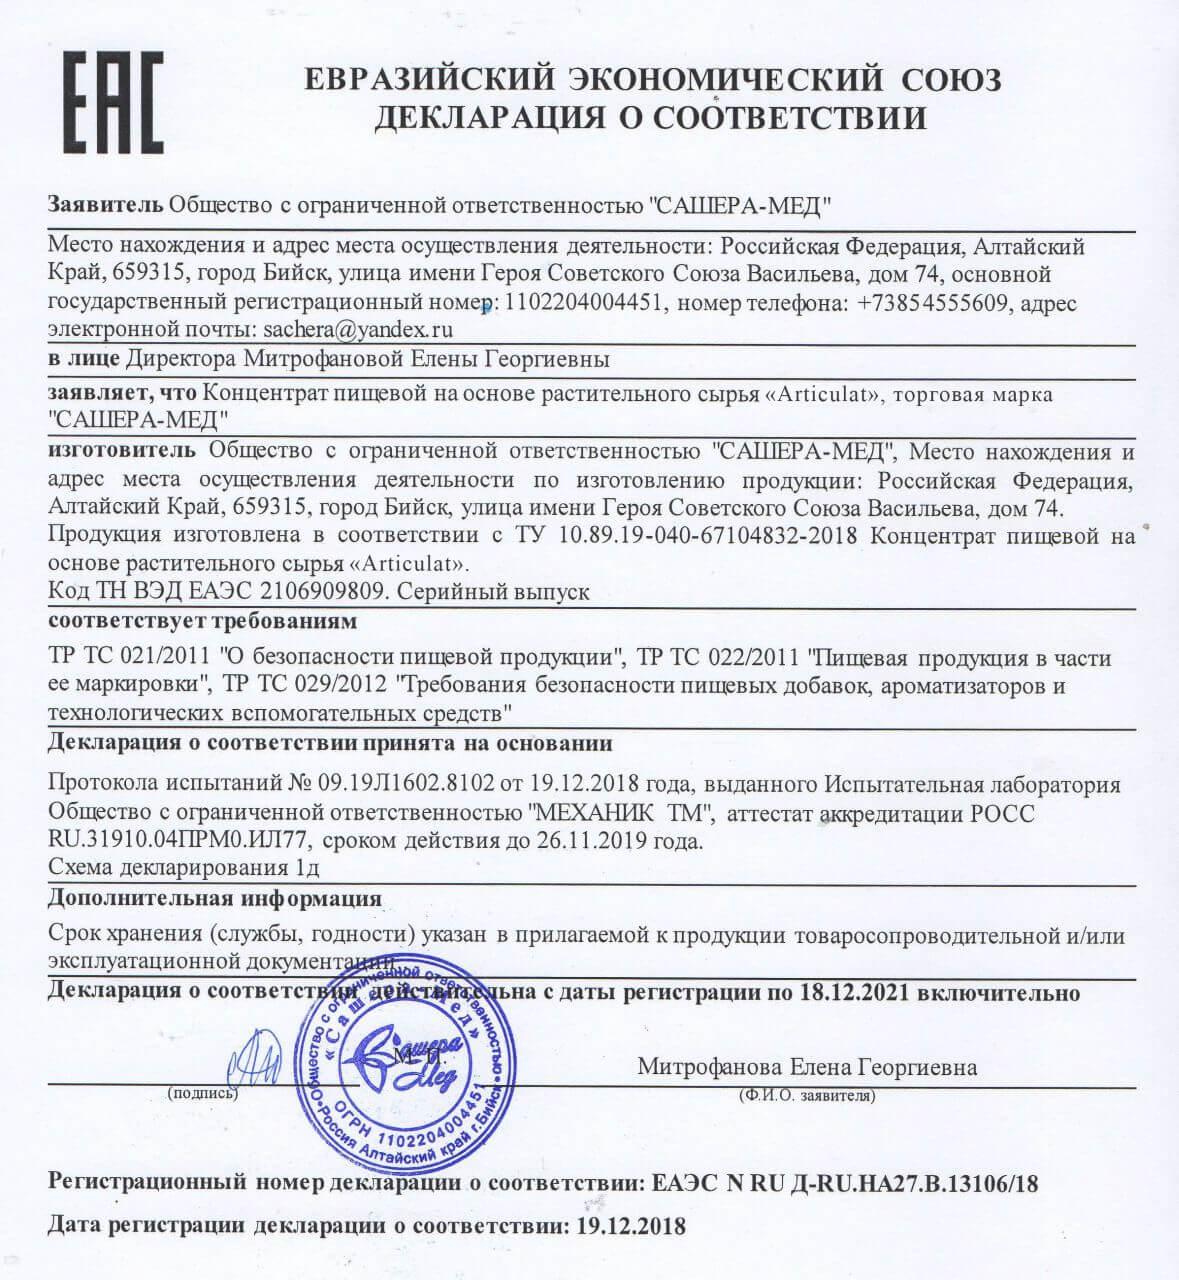 Сертификат на артикулат в Москве